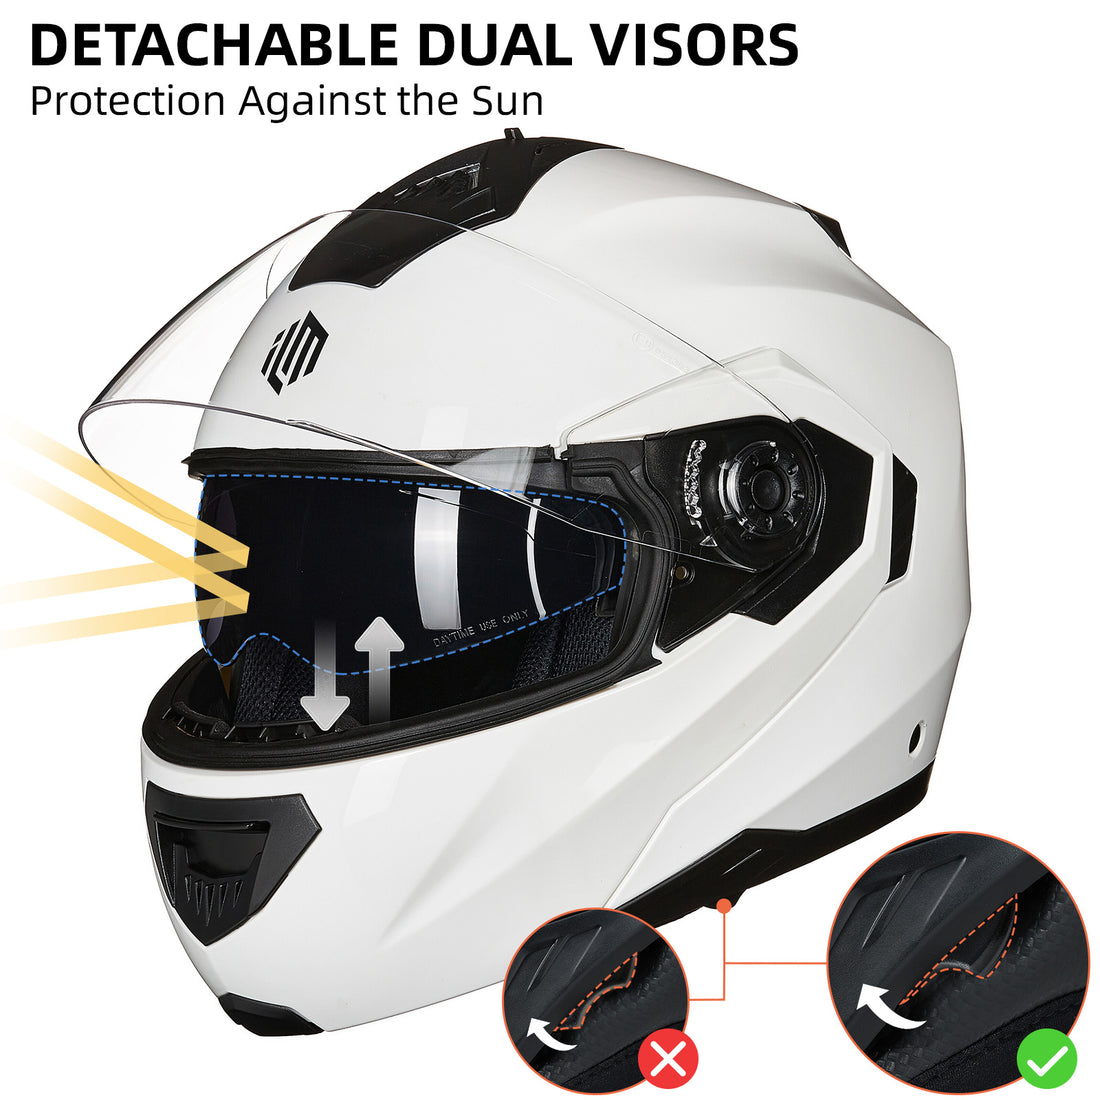 ILM Modular Full Face Motorcycle Helmet Model DP998